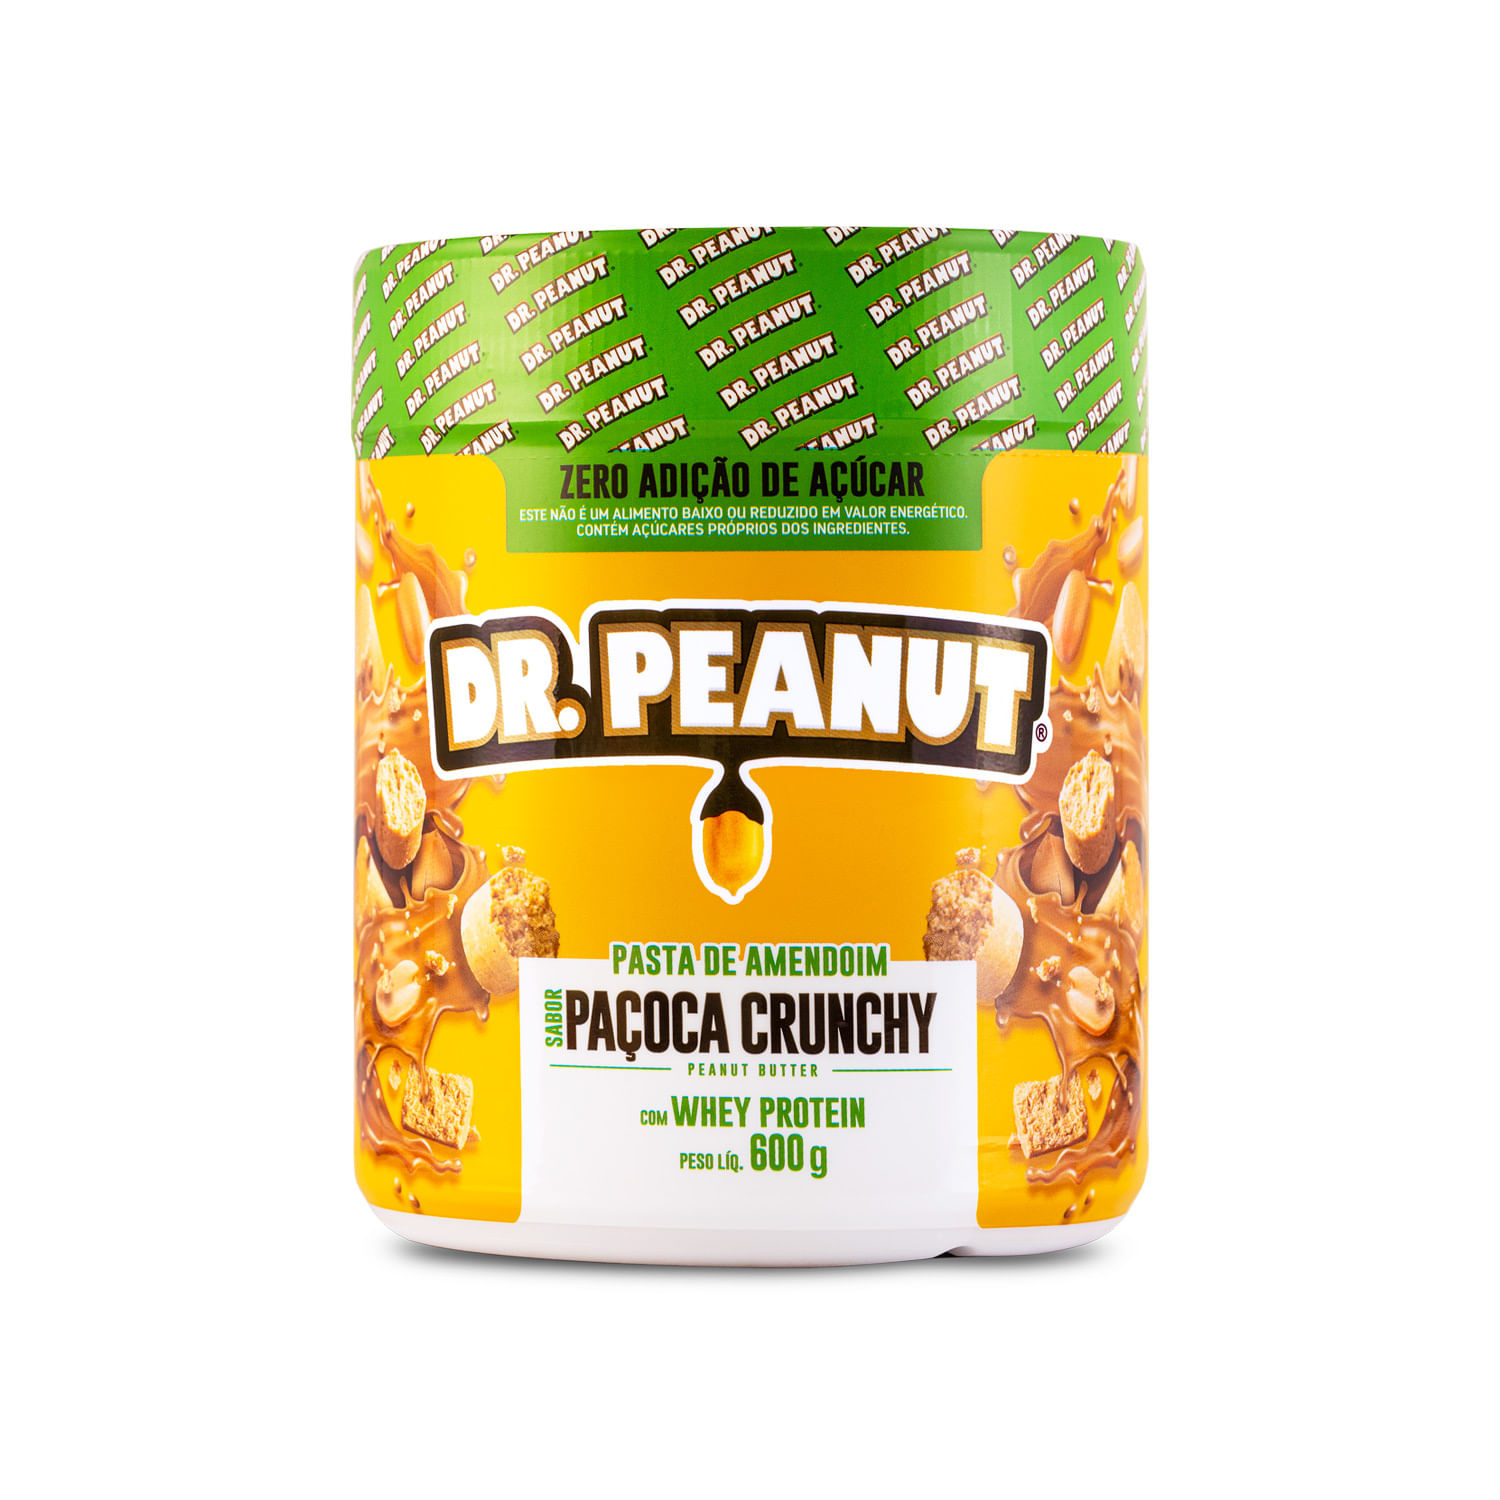 Pasta de amendoim sabor Paçoca Crunchy - 600g